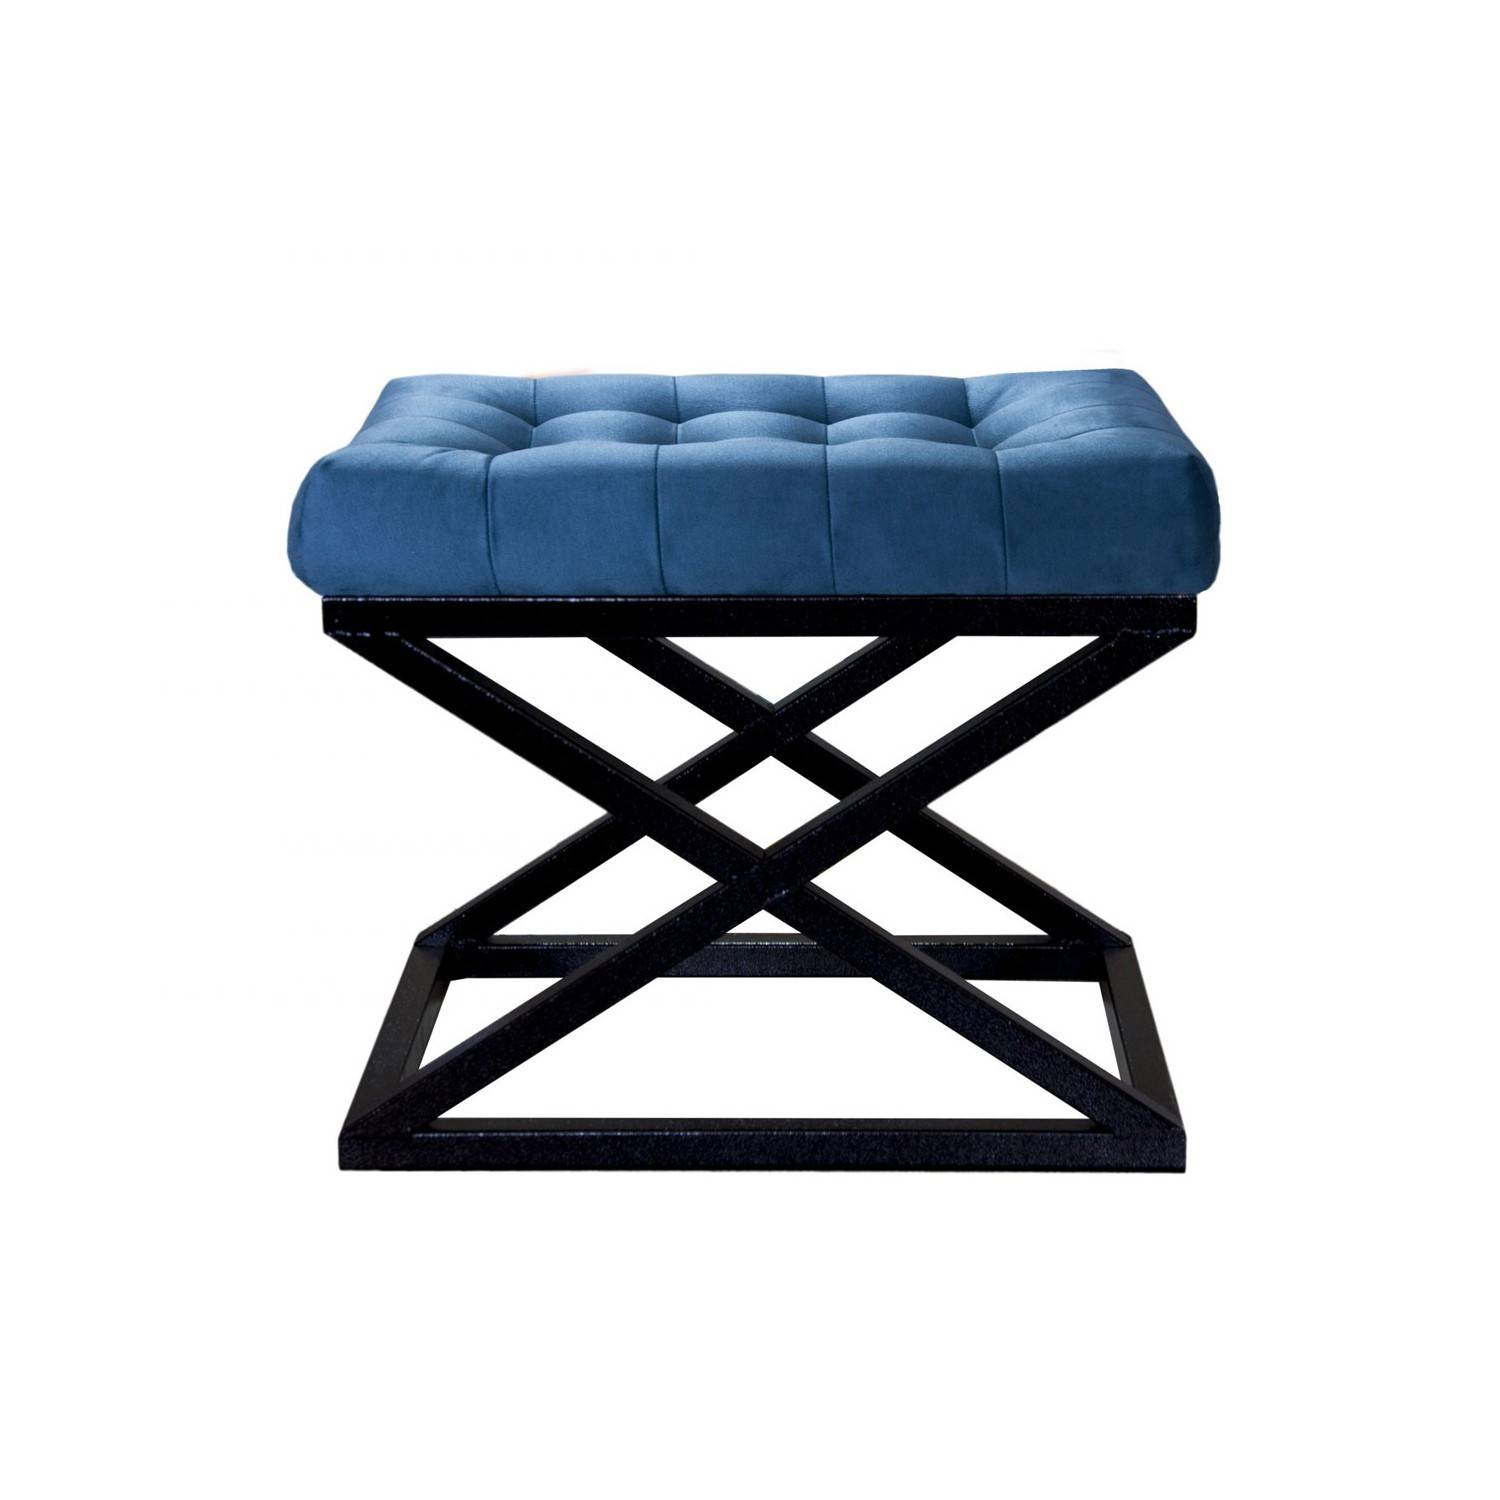 Taburete Ulad de metal negro y terciopelo azul marino, asiento tapizado